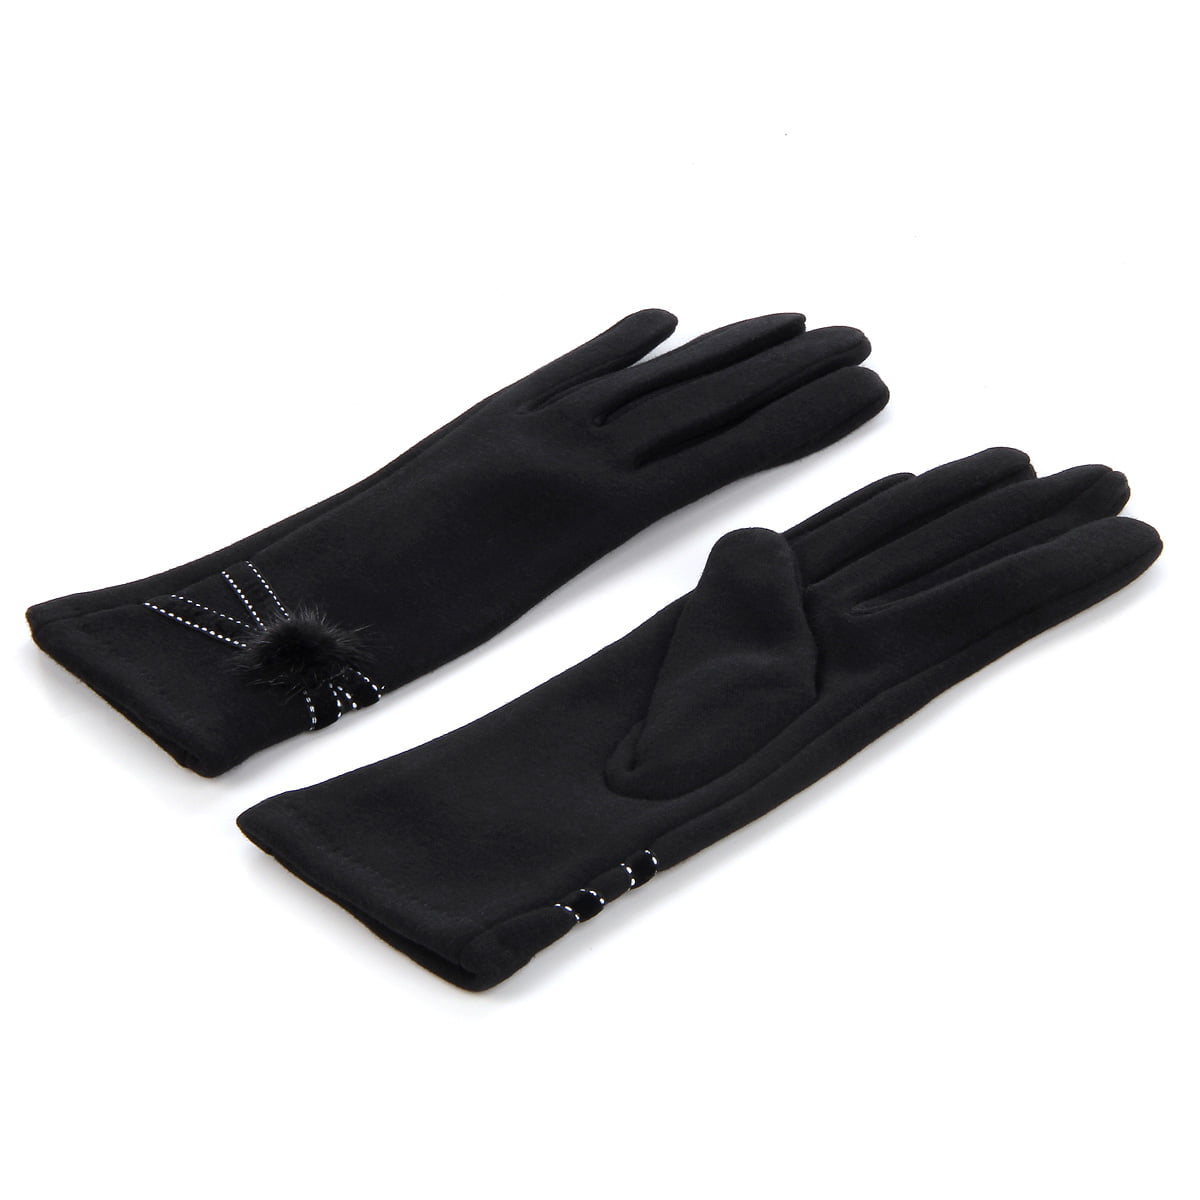 Jeff & Aimy Winter Waterproof Gloves Lightweight For Men Women 